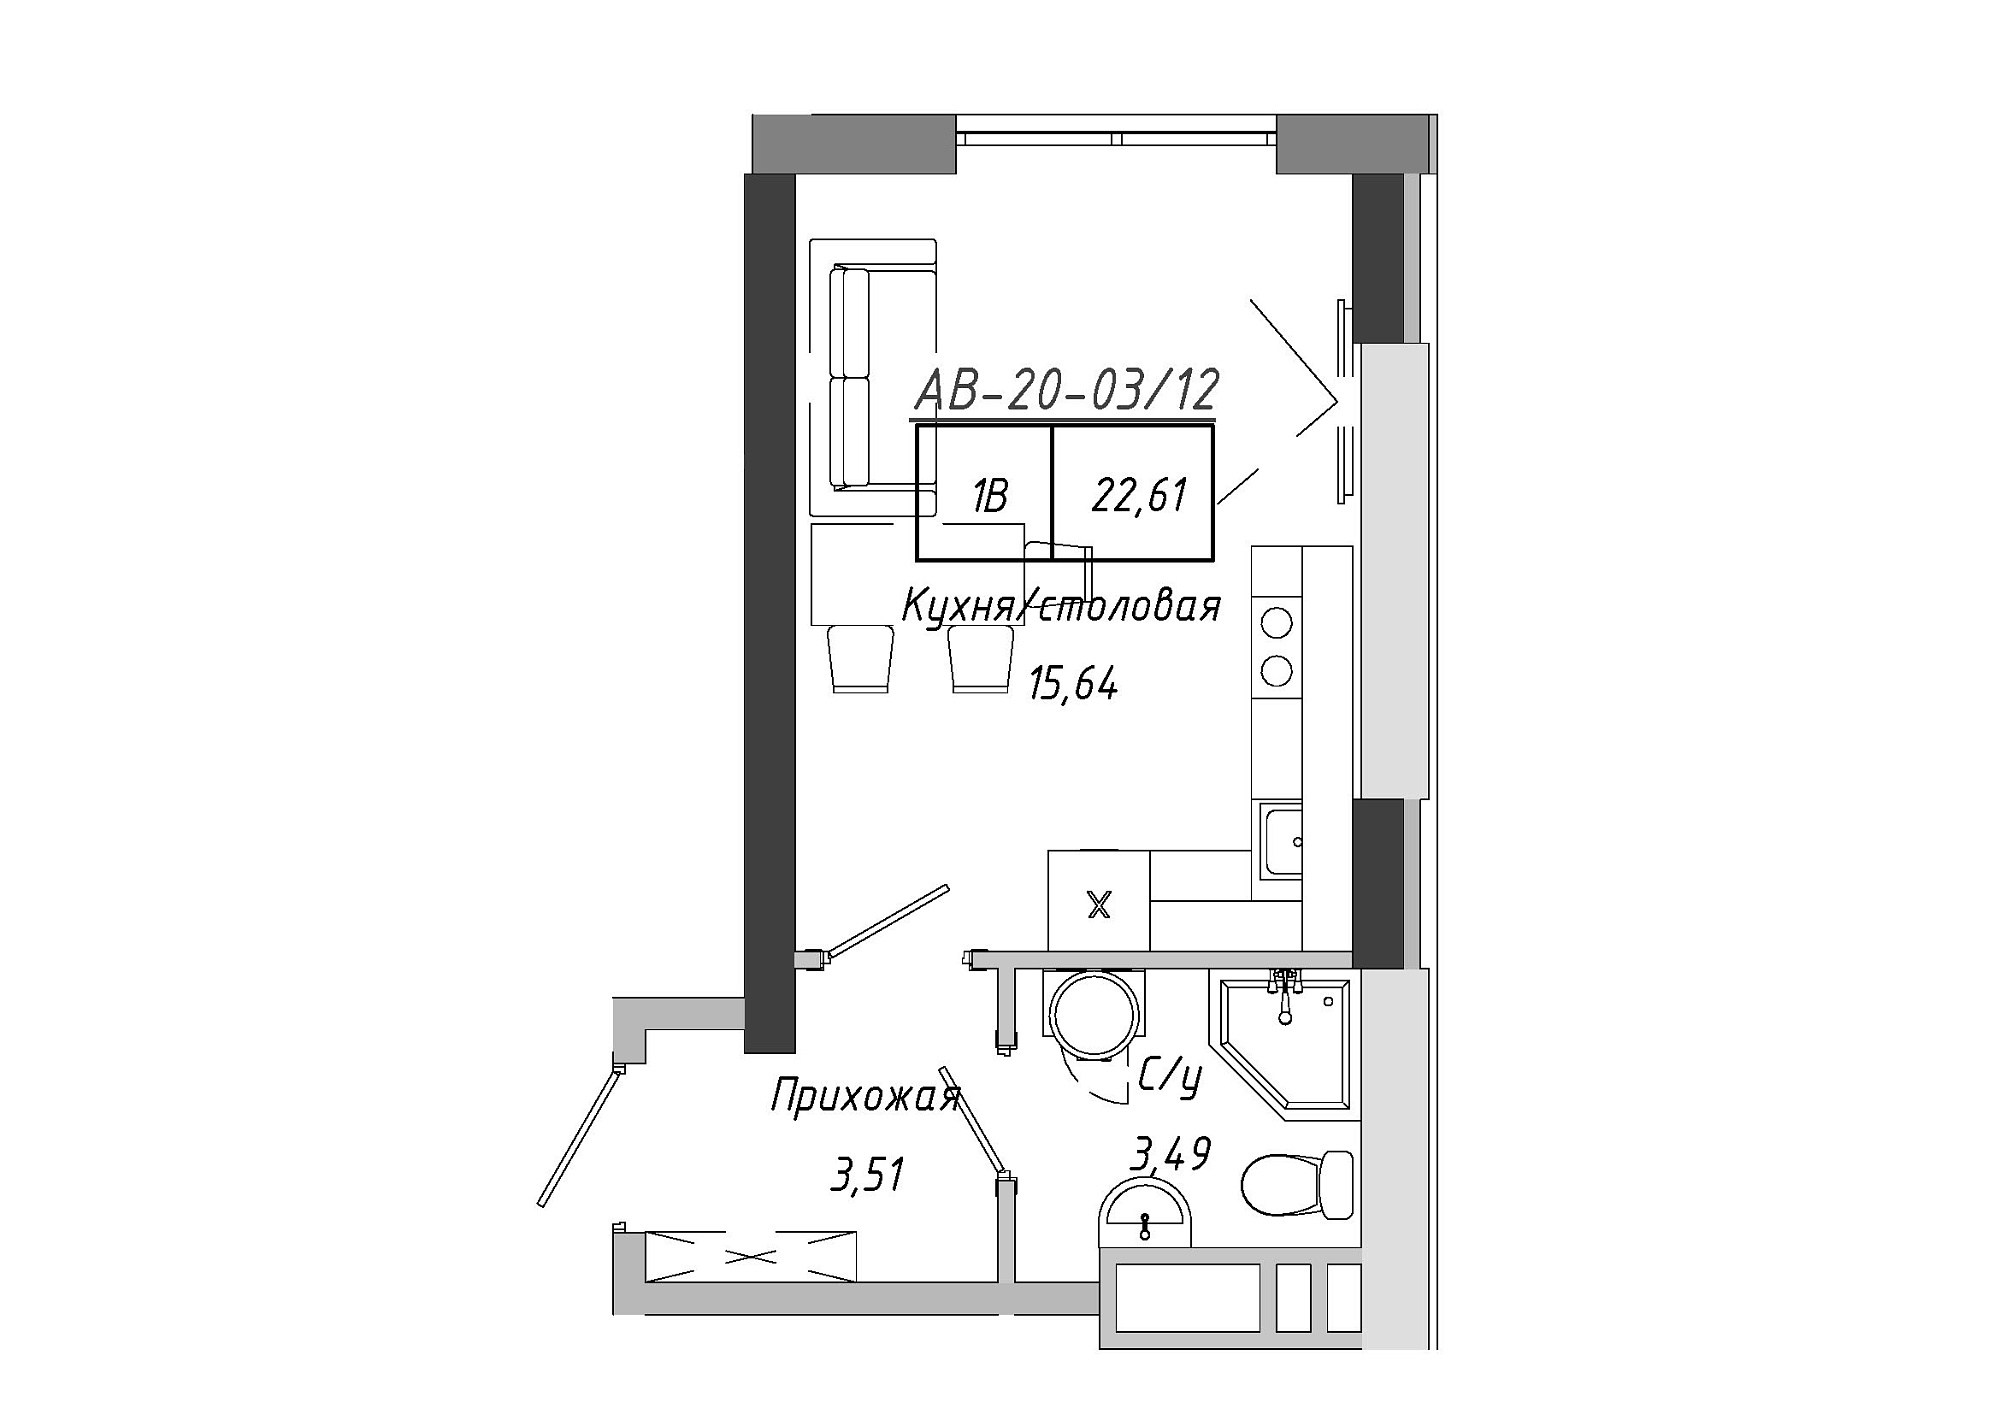 Планування Smart-квартира площею 22.61м2, AB-20-03/00012.